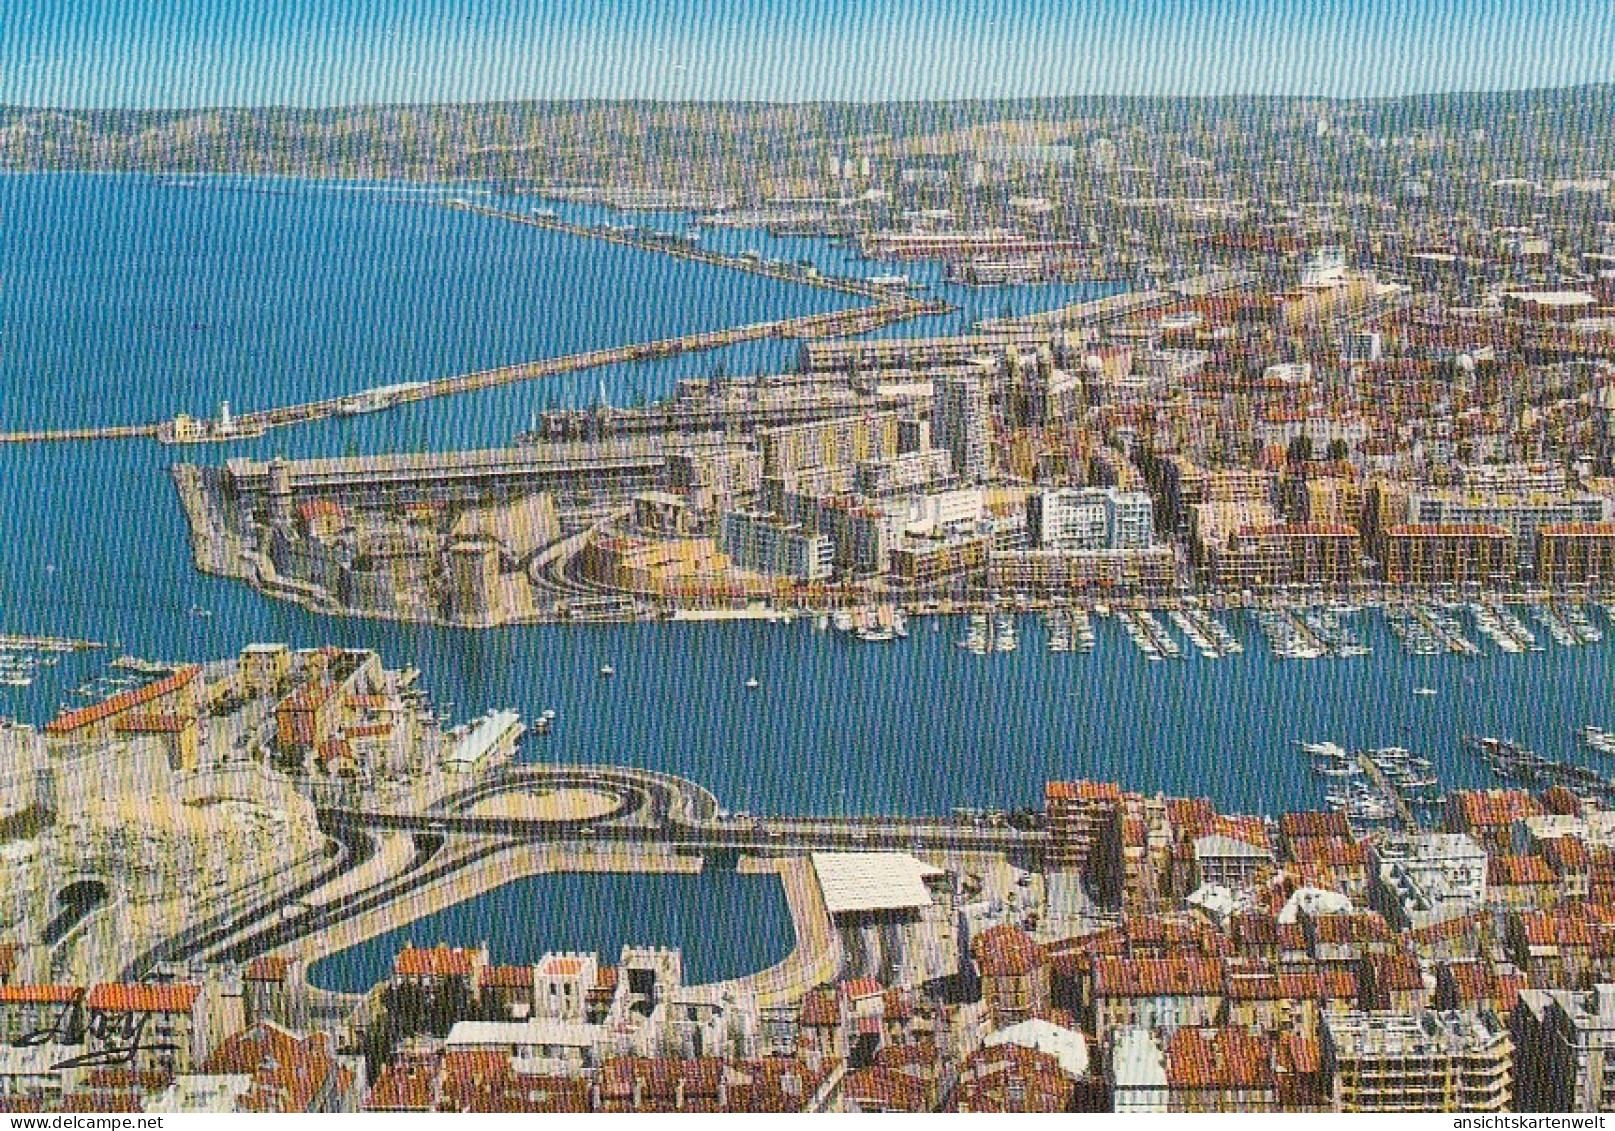 Marseille (B.-du-Rh.) Le Port Et L'entrée Du Tunnel Ngl #E4410 - Old Port, Saint Victor, Le Panier